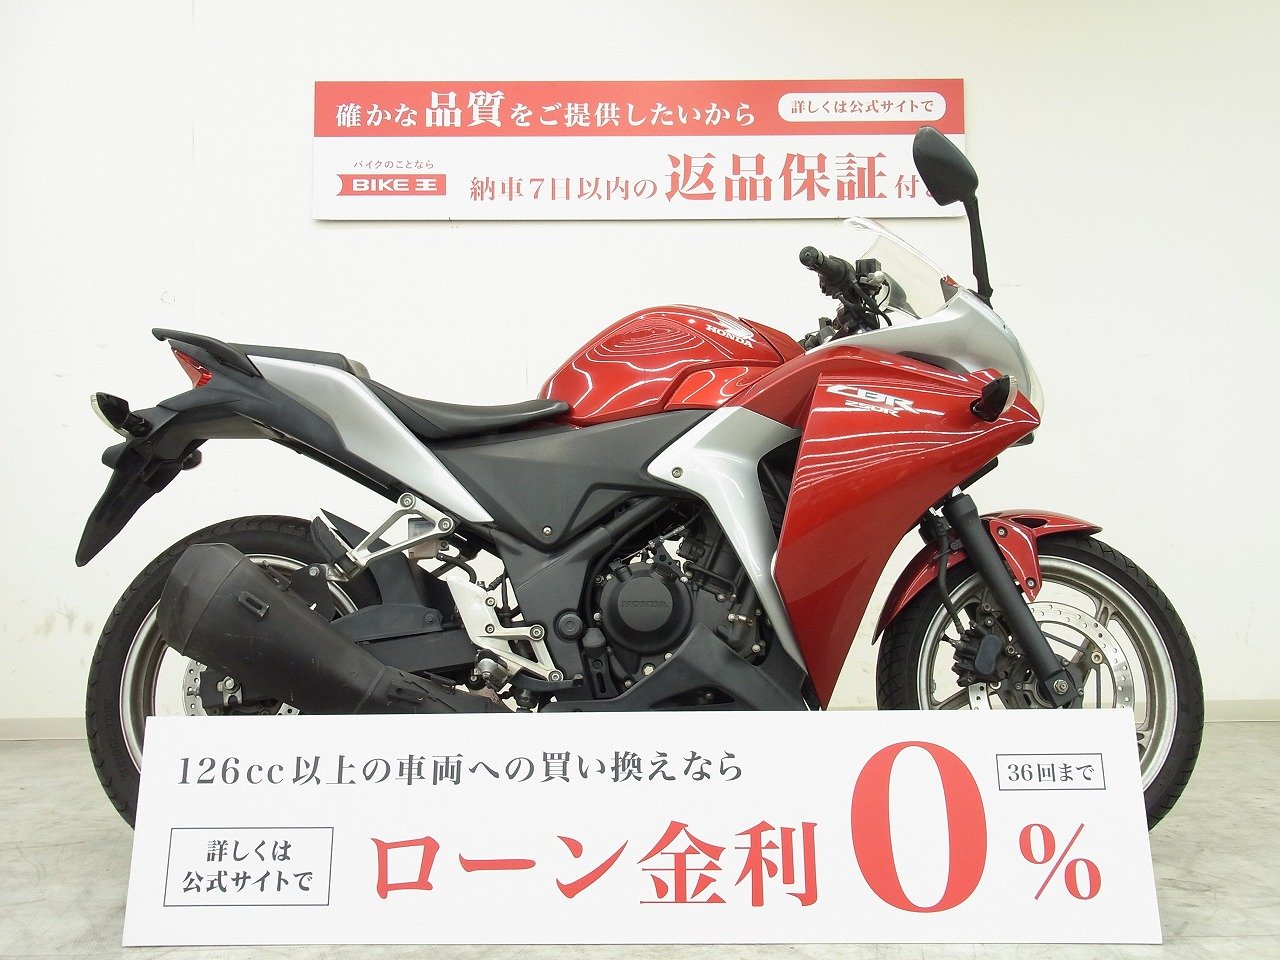 大阪特売CBR250R ABS MC41 2011モデル 距離: 7,349km 日常で気軽に使え操るしさを体感できるフルカウルスポーツ ロナジャパン 126cc-250cc